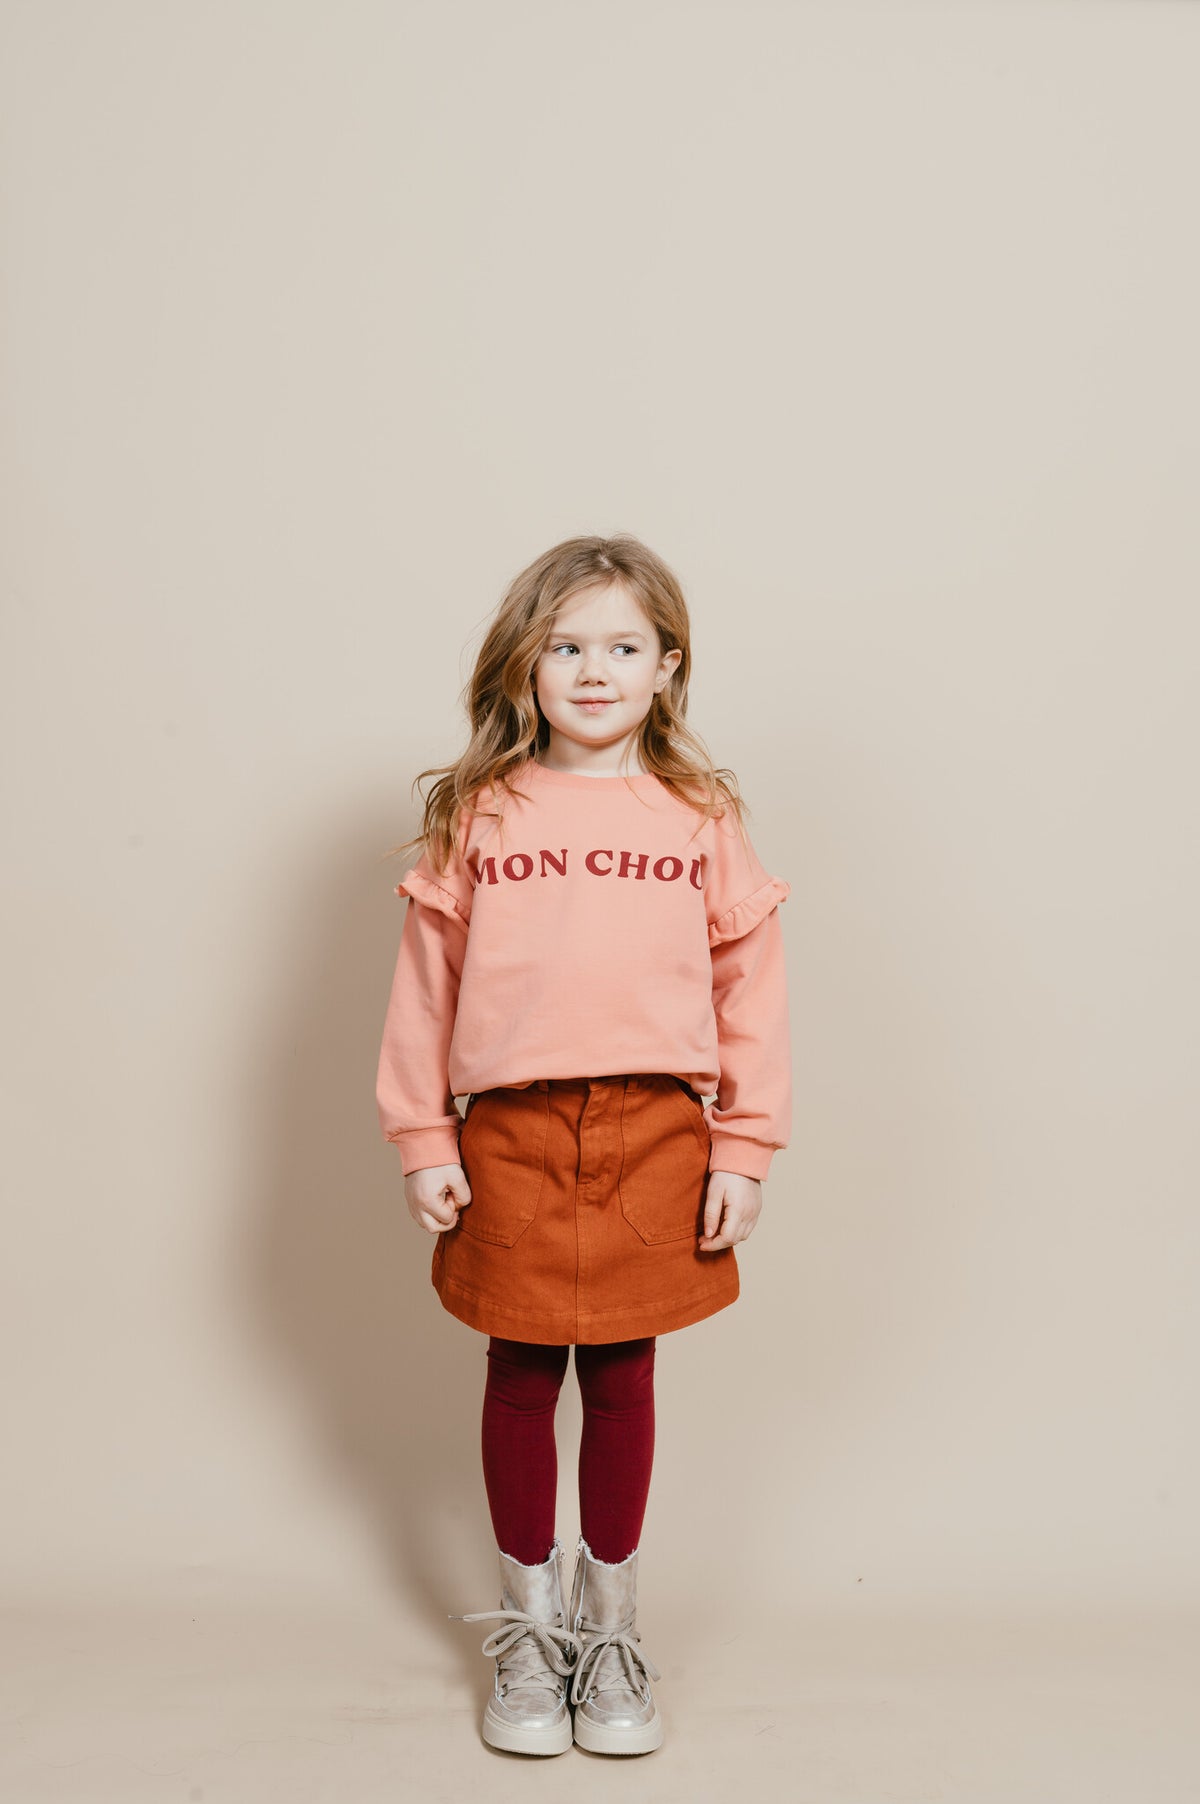 Sweater Ruffle "Mon Chou" | Rosette